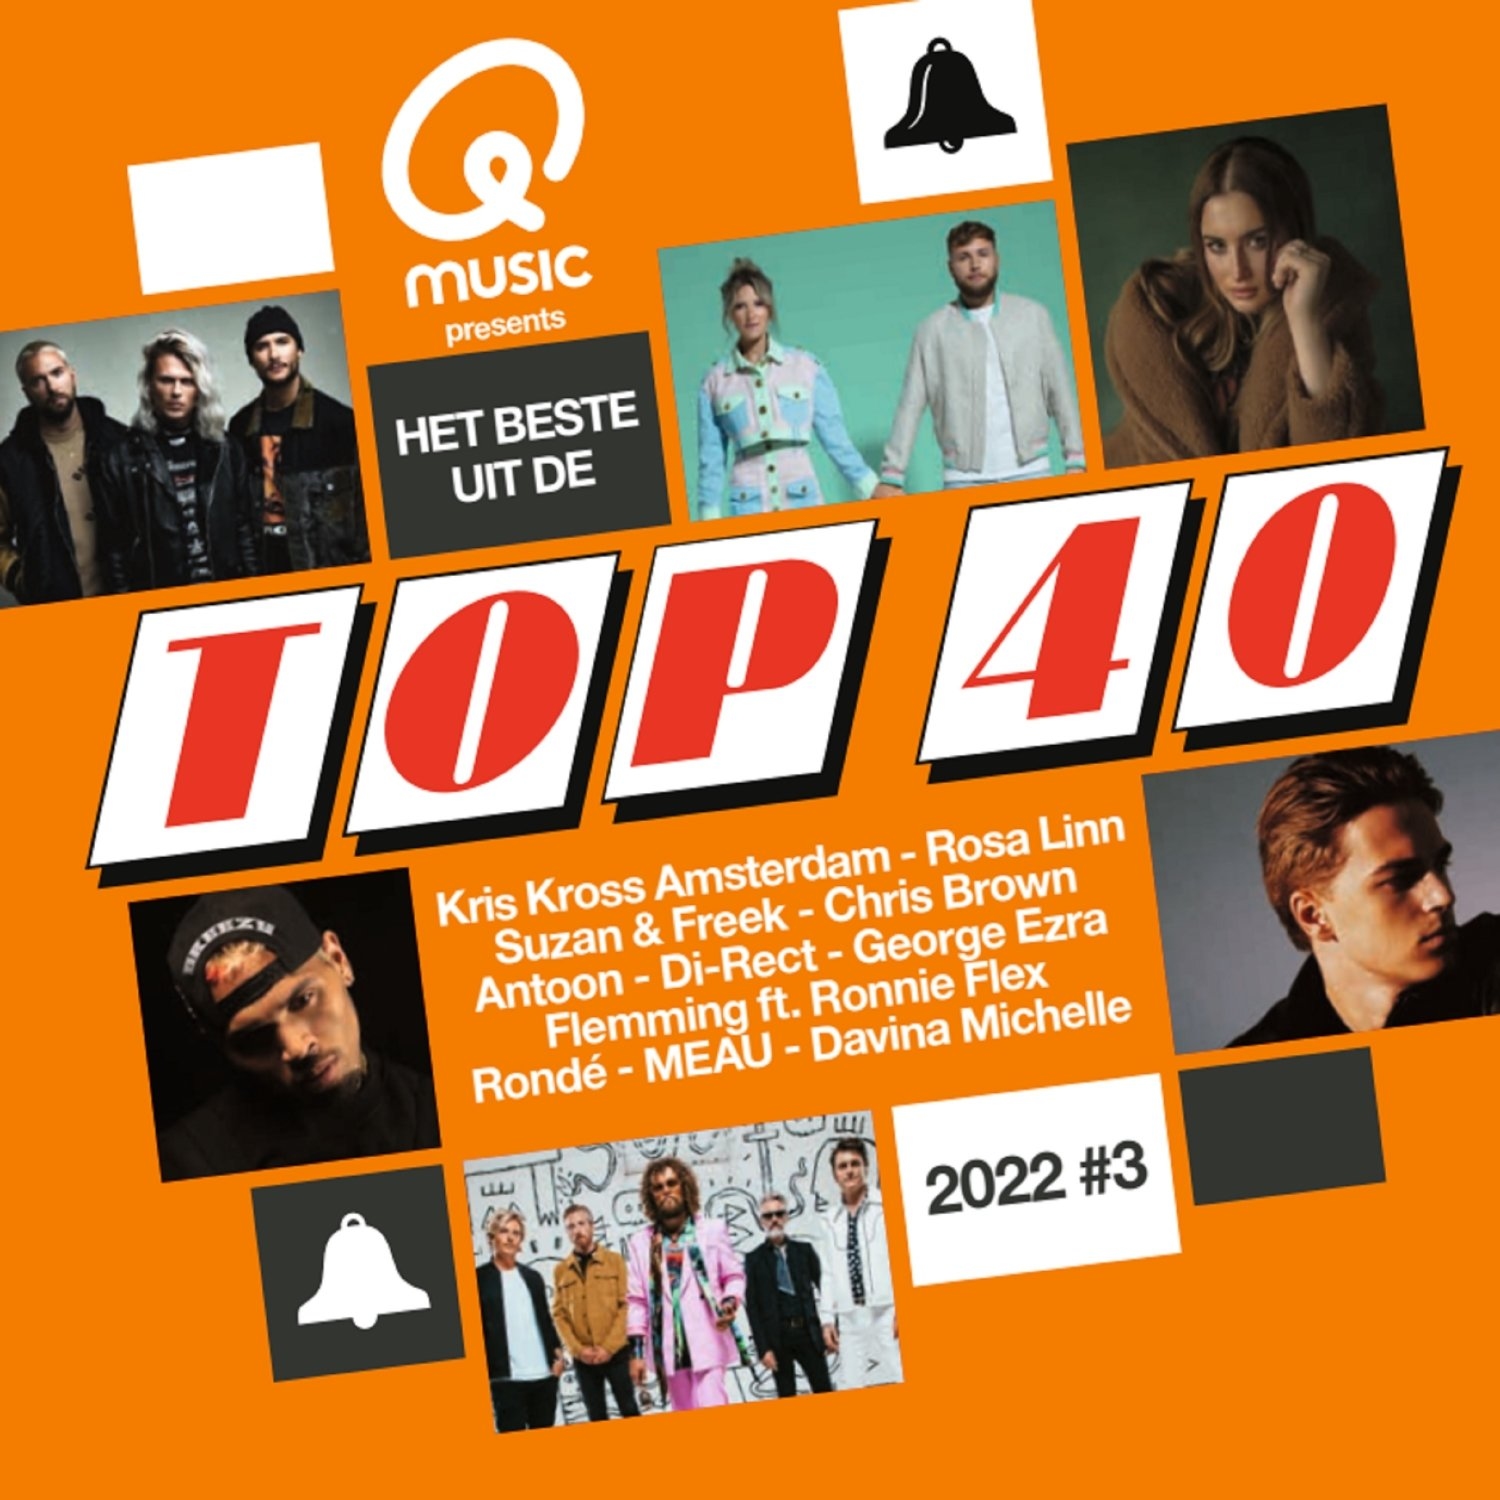 Uitwerpselen Van markering Qmusic Presents Het Beste Uit De Top 40 2022 #3